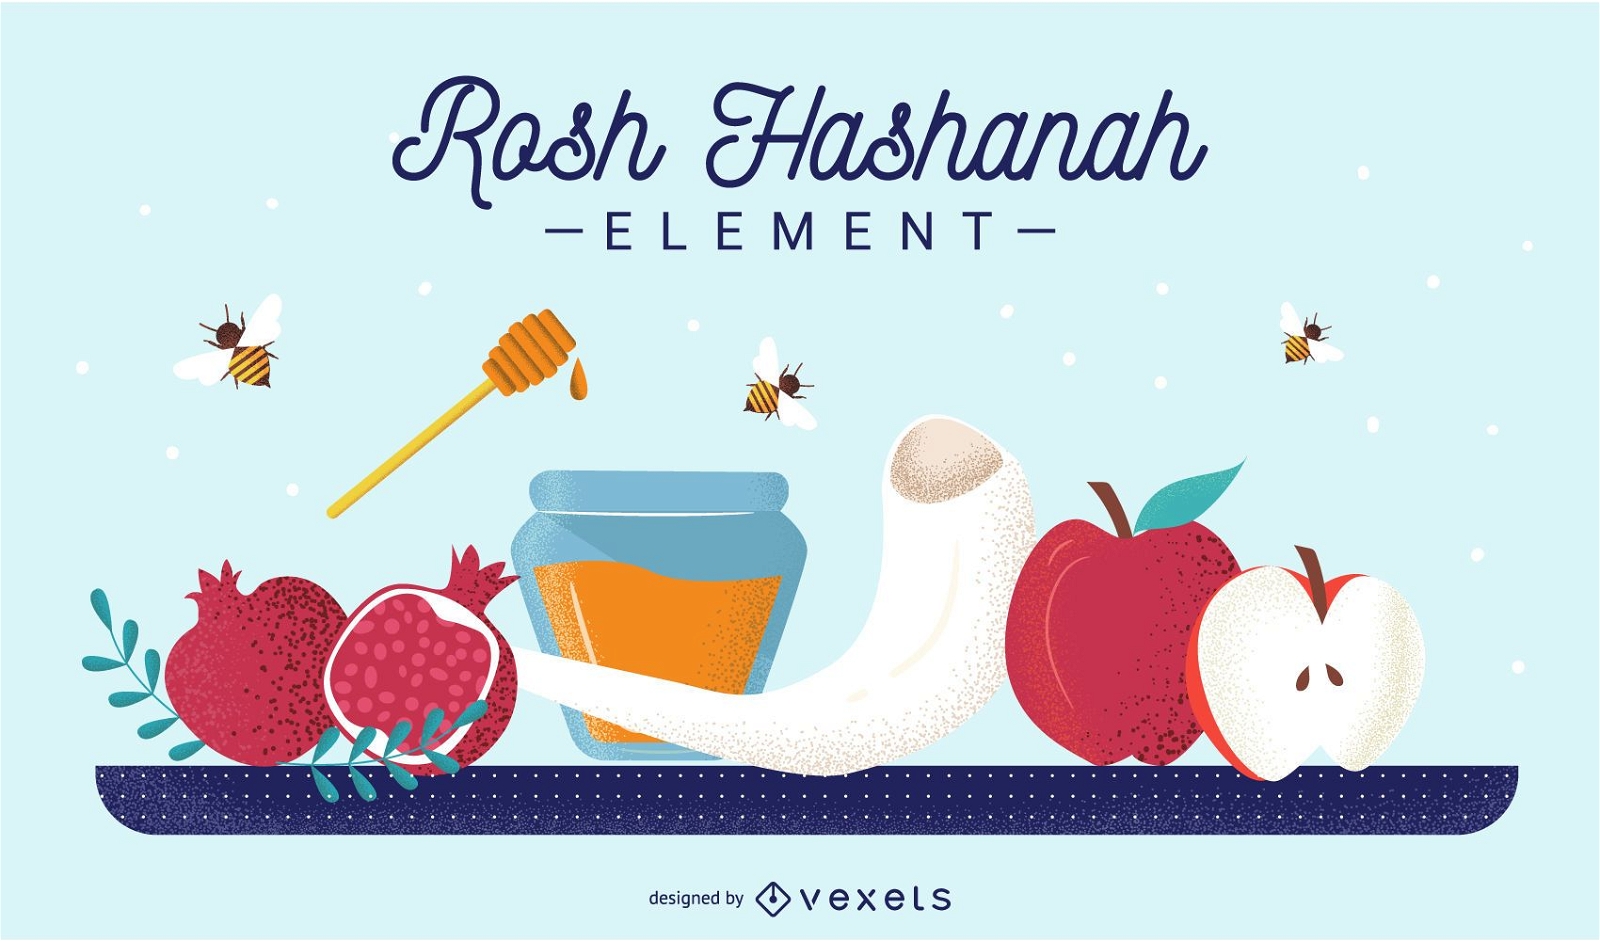 Rosh Hashanah element set